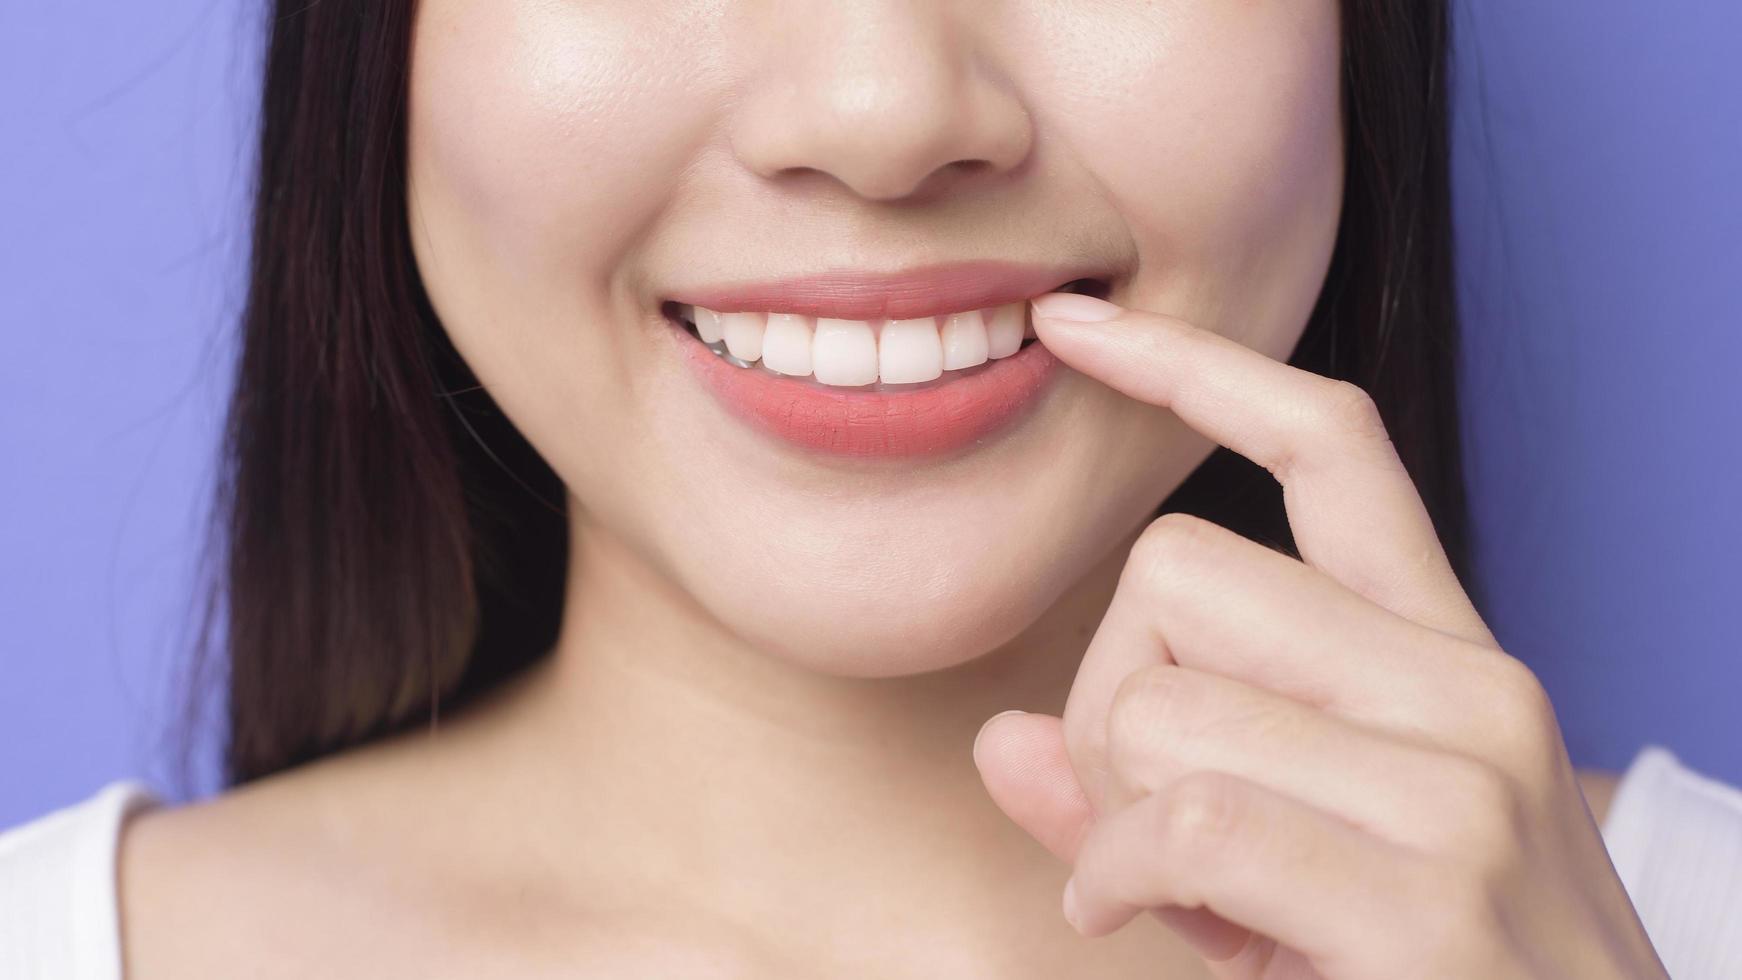 una joven mujer hermosa y sonriente está mostrando y señalando sus sanos dientes blancos y rectos sobre un estudio de fondo morado foto